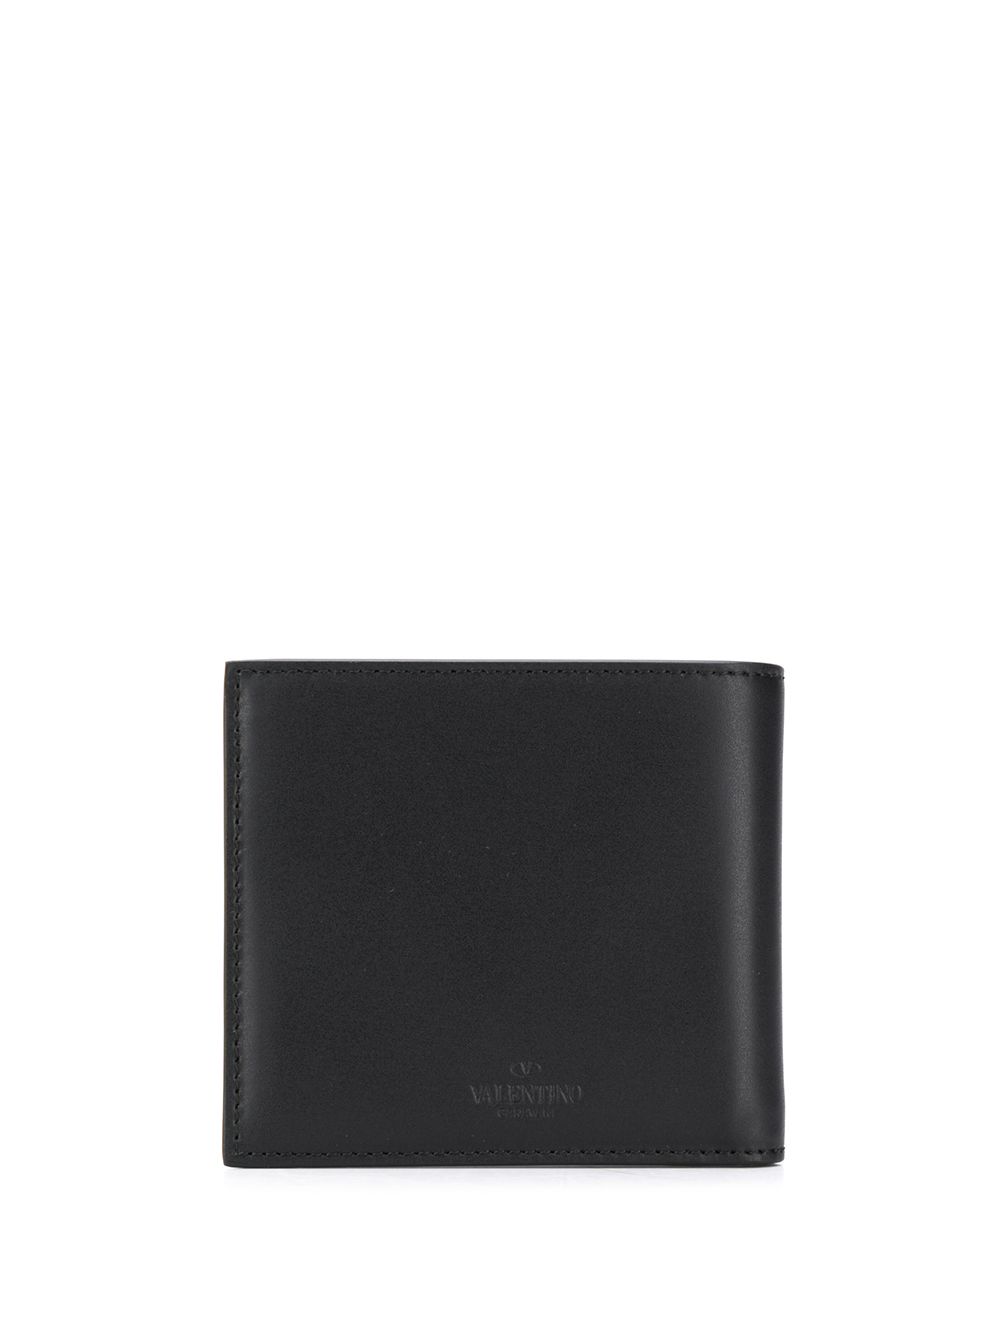 фото Valentino кошелек с логотипом vltn